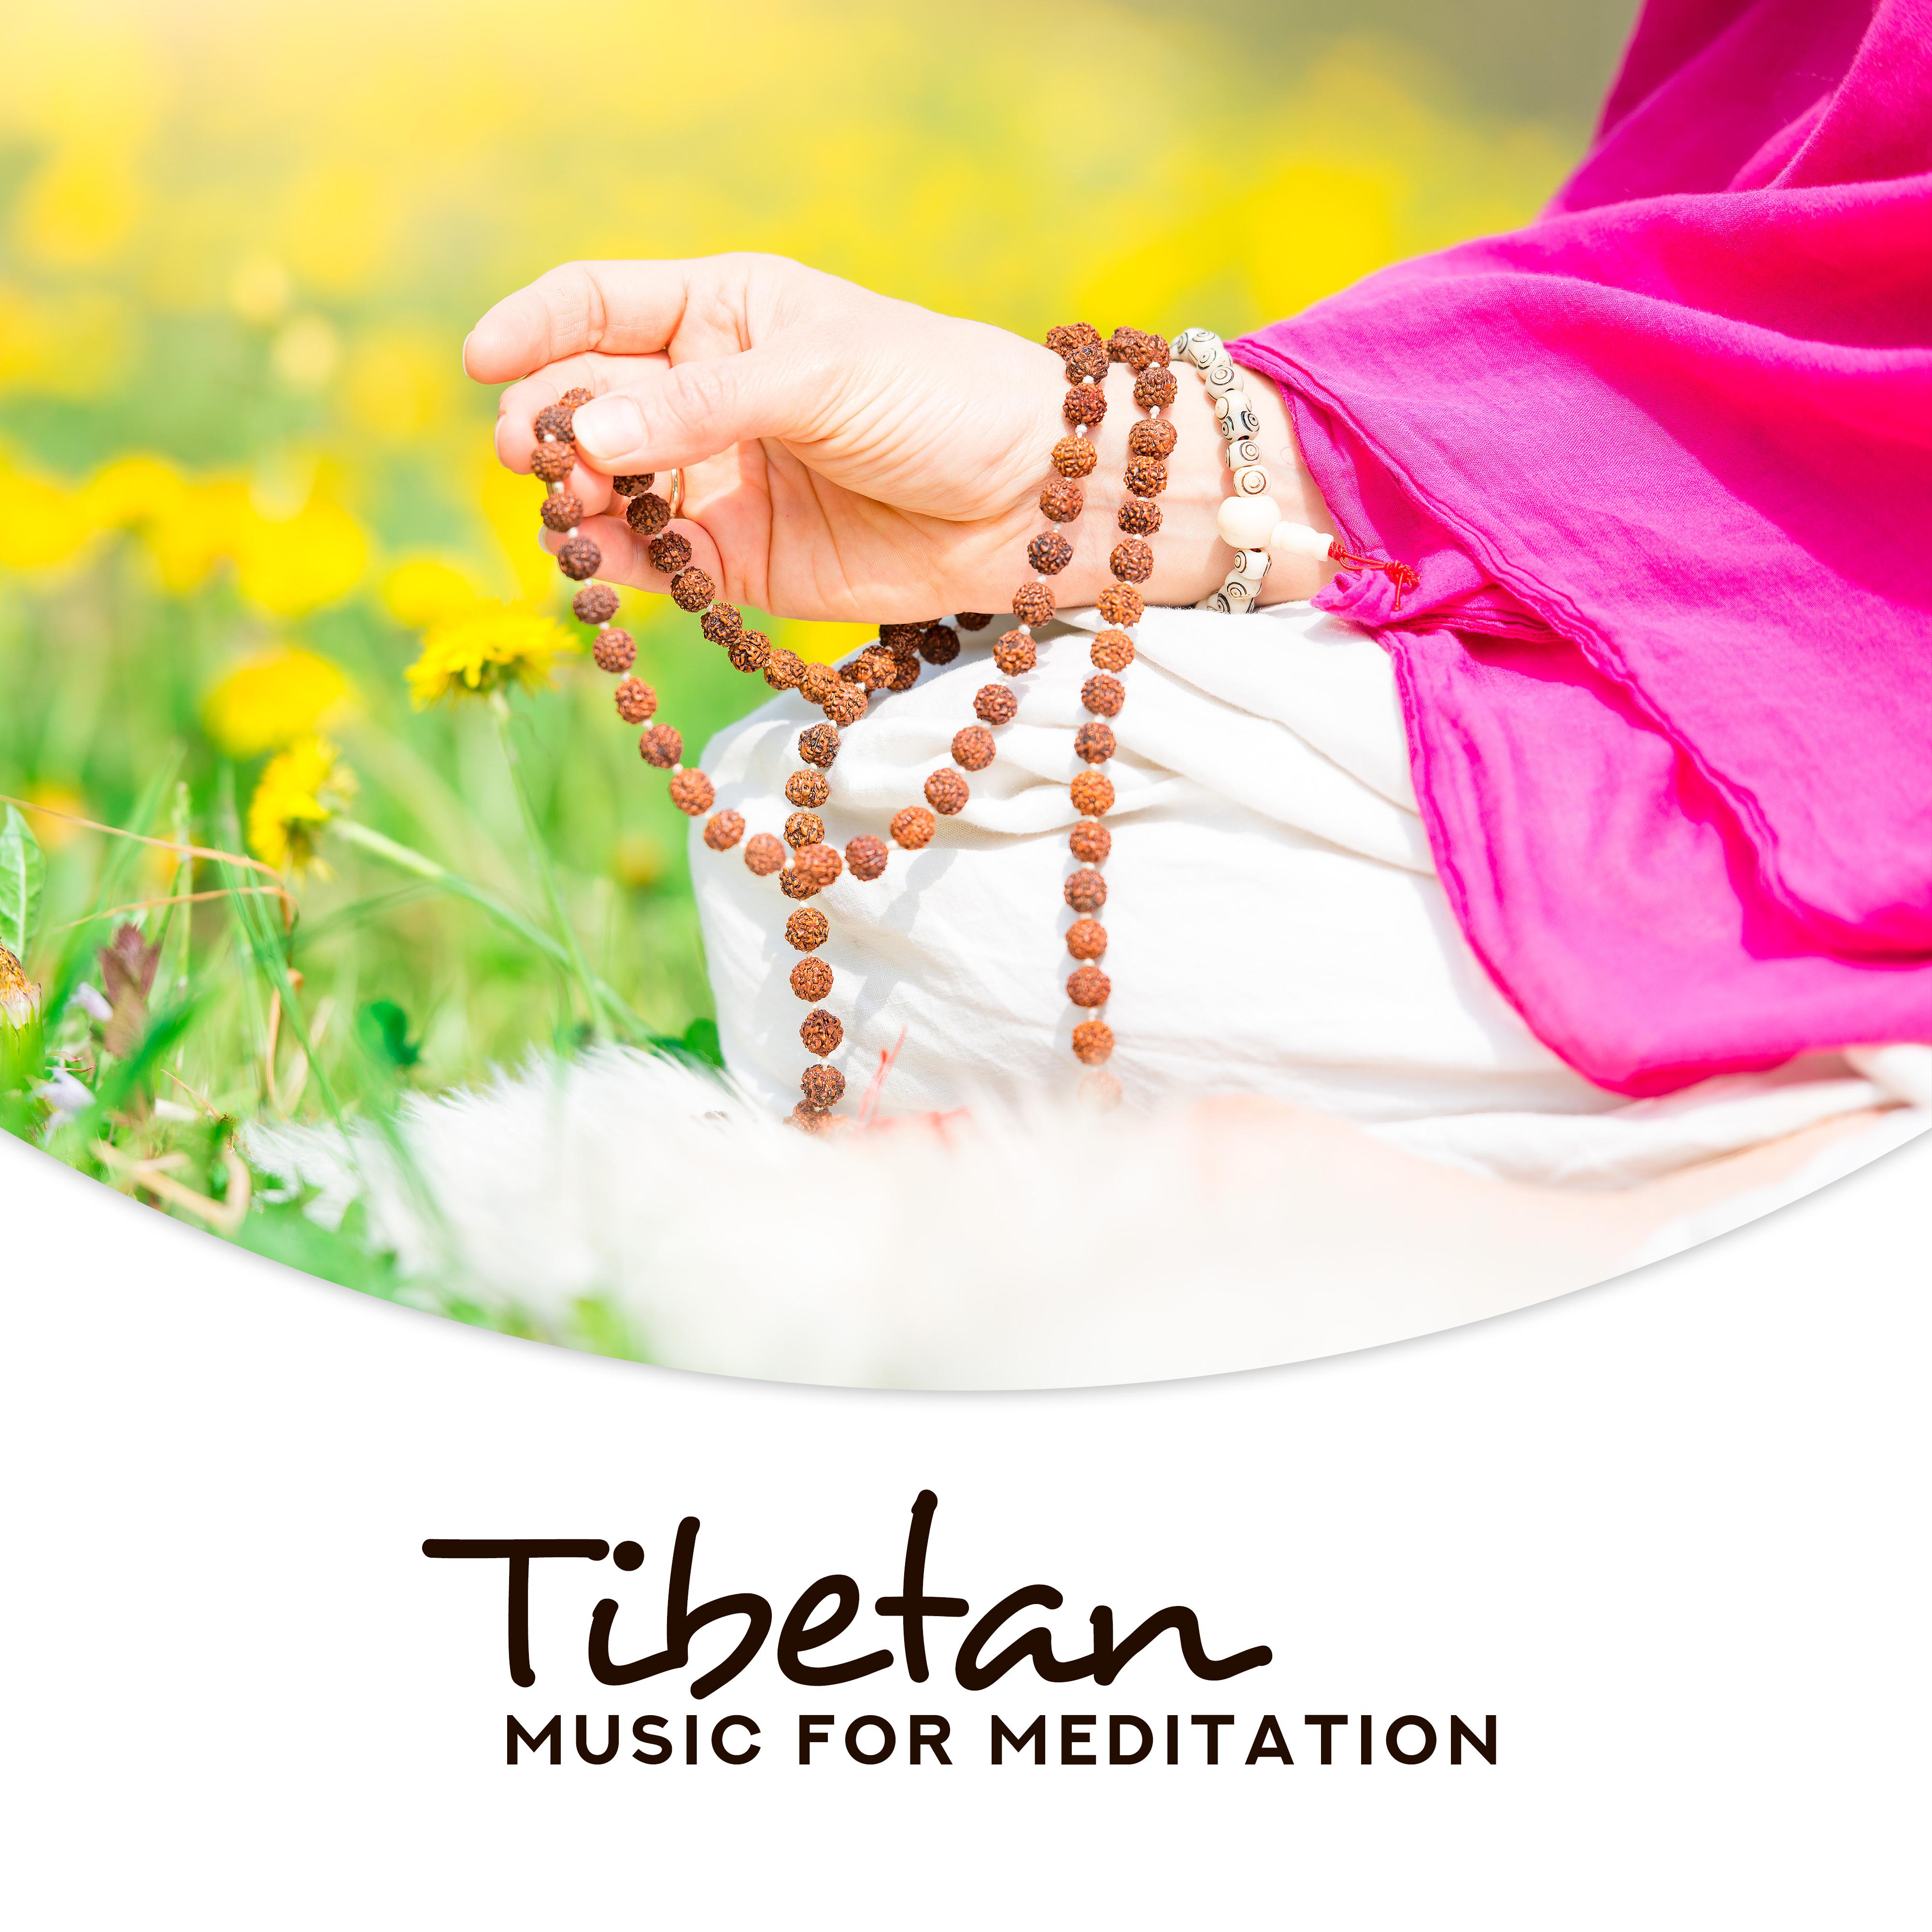 Tibetan Music for Meditation